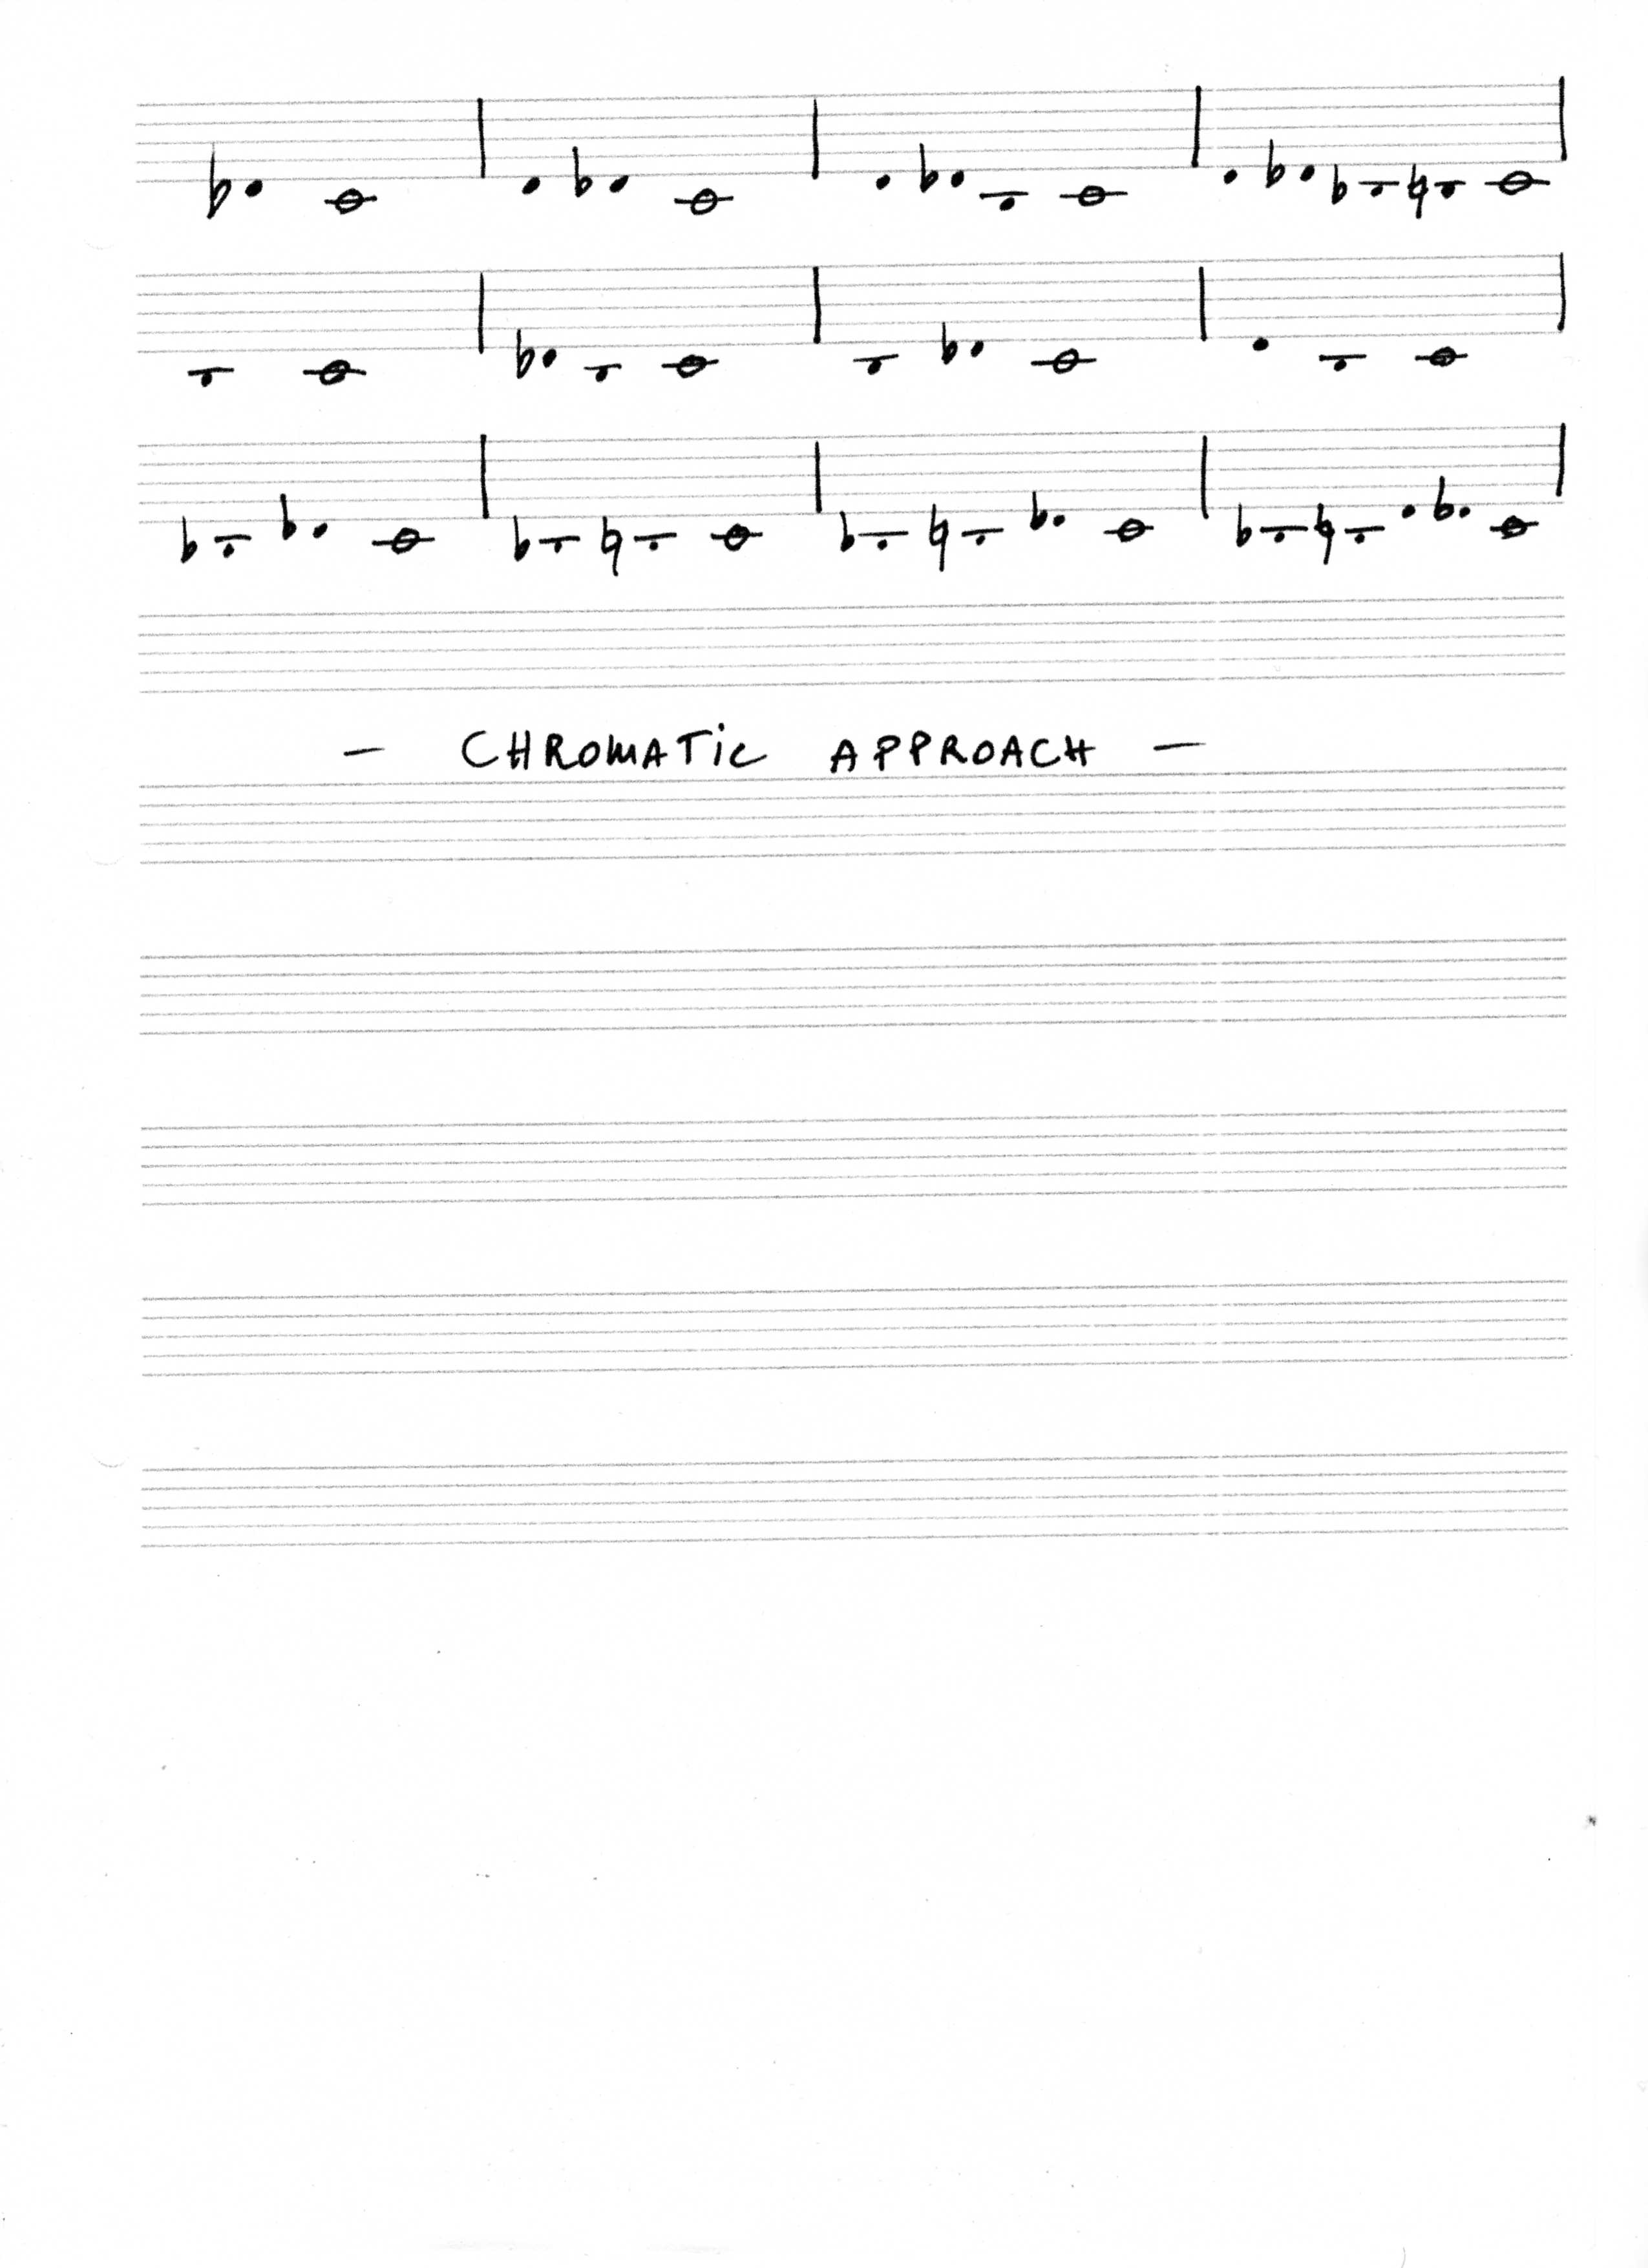 Eine chromatische Annäherung an Jazzharmonie und Melodie pdf Download